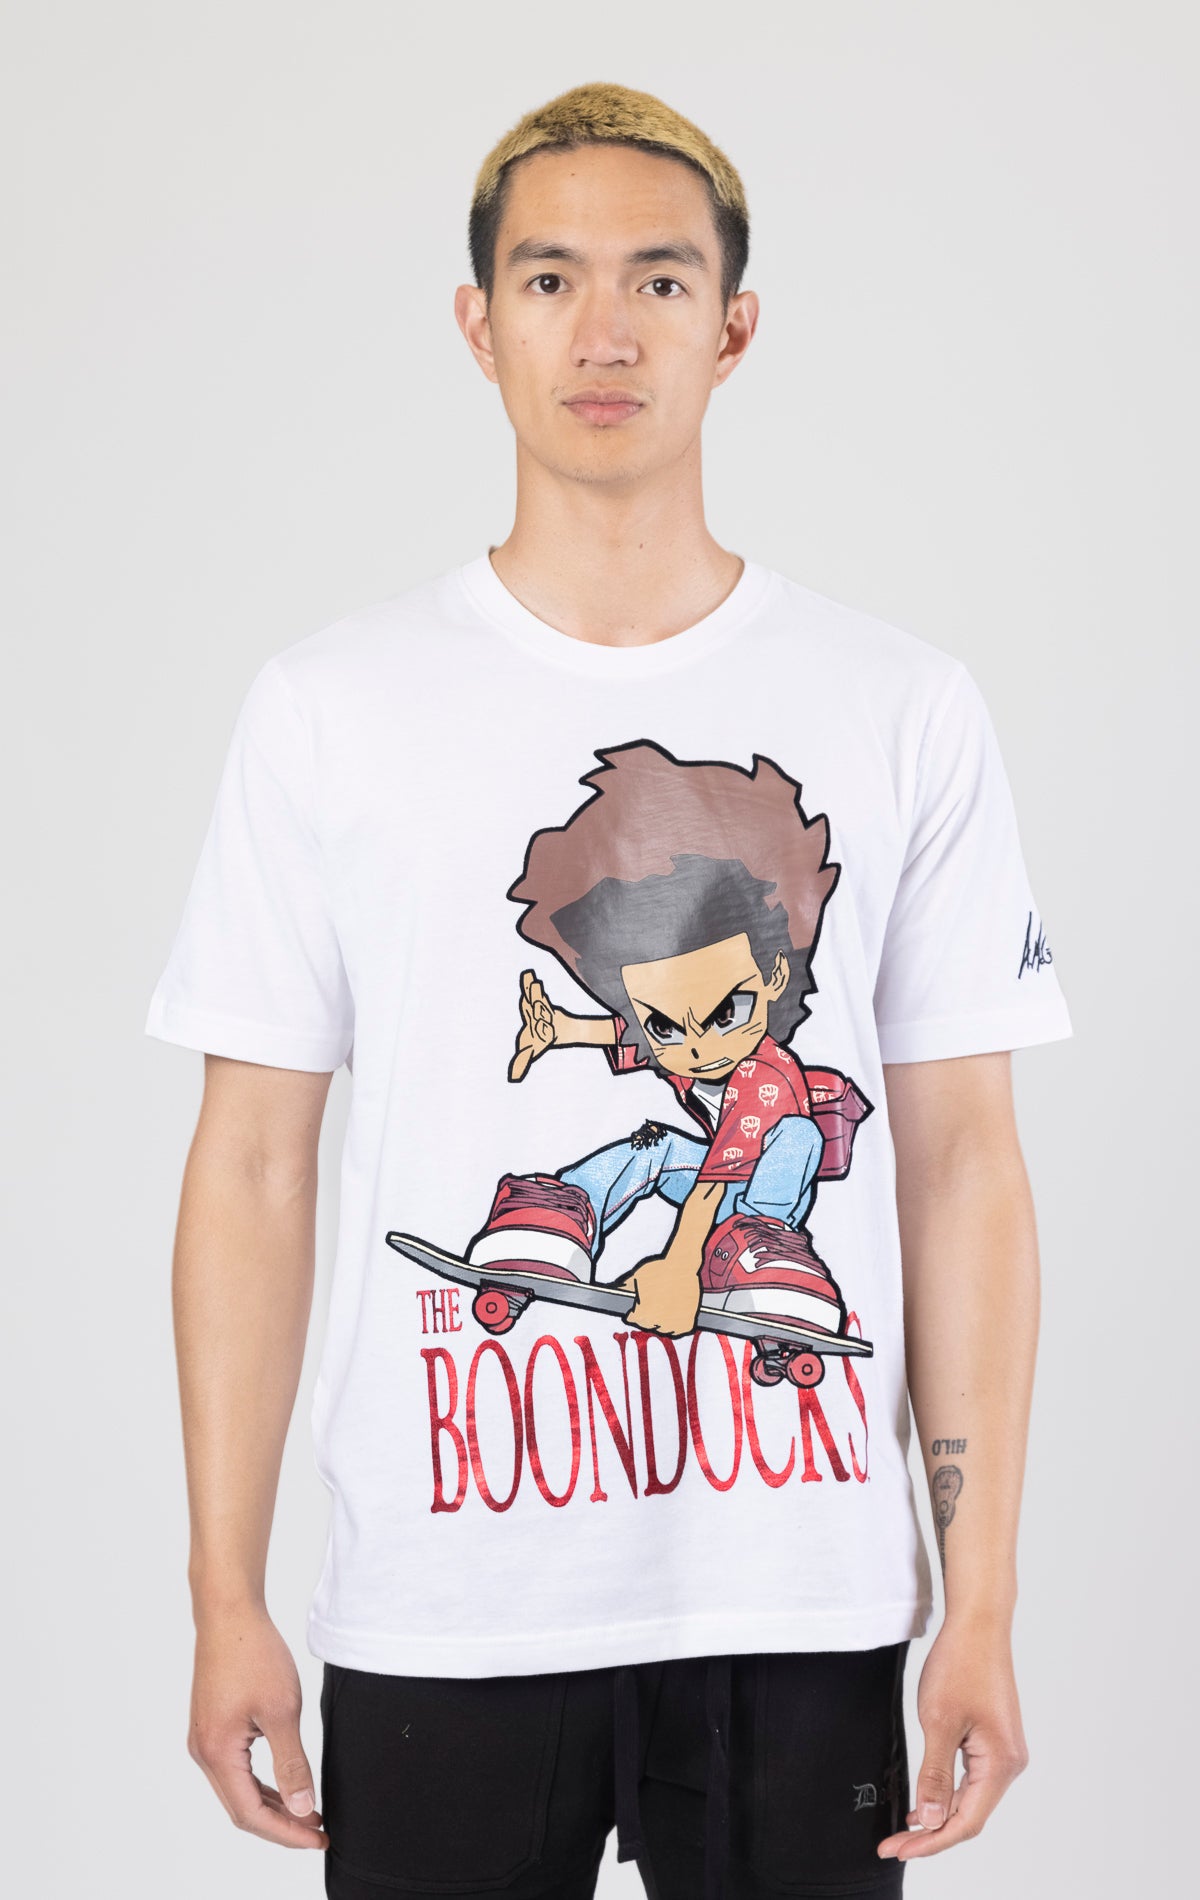 Skate jump Boondocks avatar white graphic t-shirt